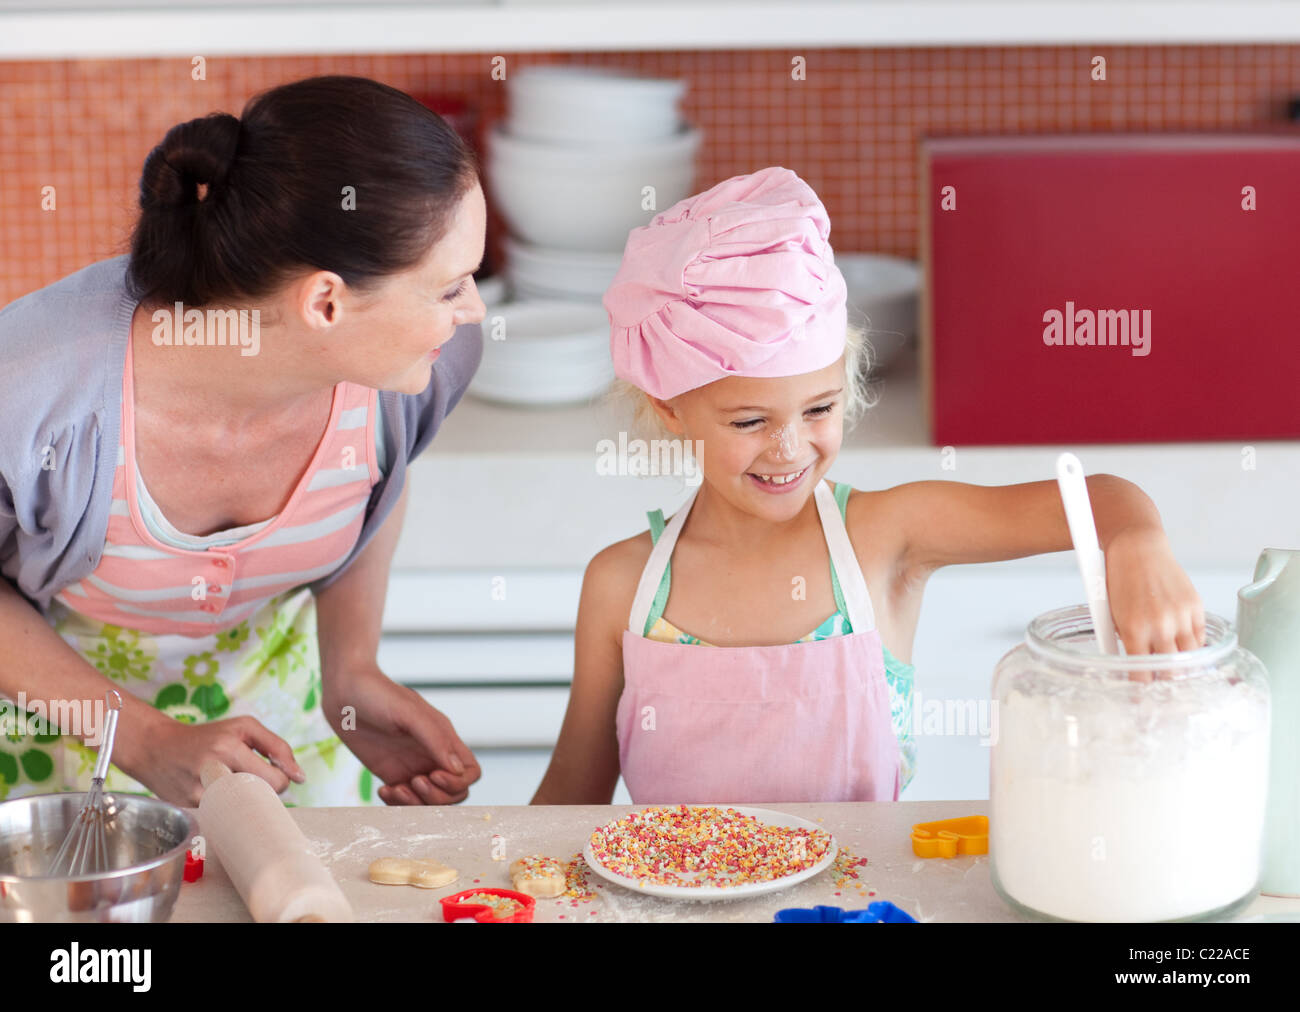 Мама готовит блины. Мама с дочкой готовят. Мама с ребенком готовит мороженое. Мама с Димочкой пекут блины. Блинчики приготовленные с мамой и дочкой.